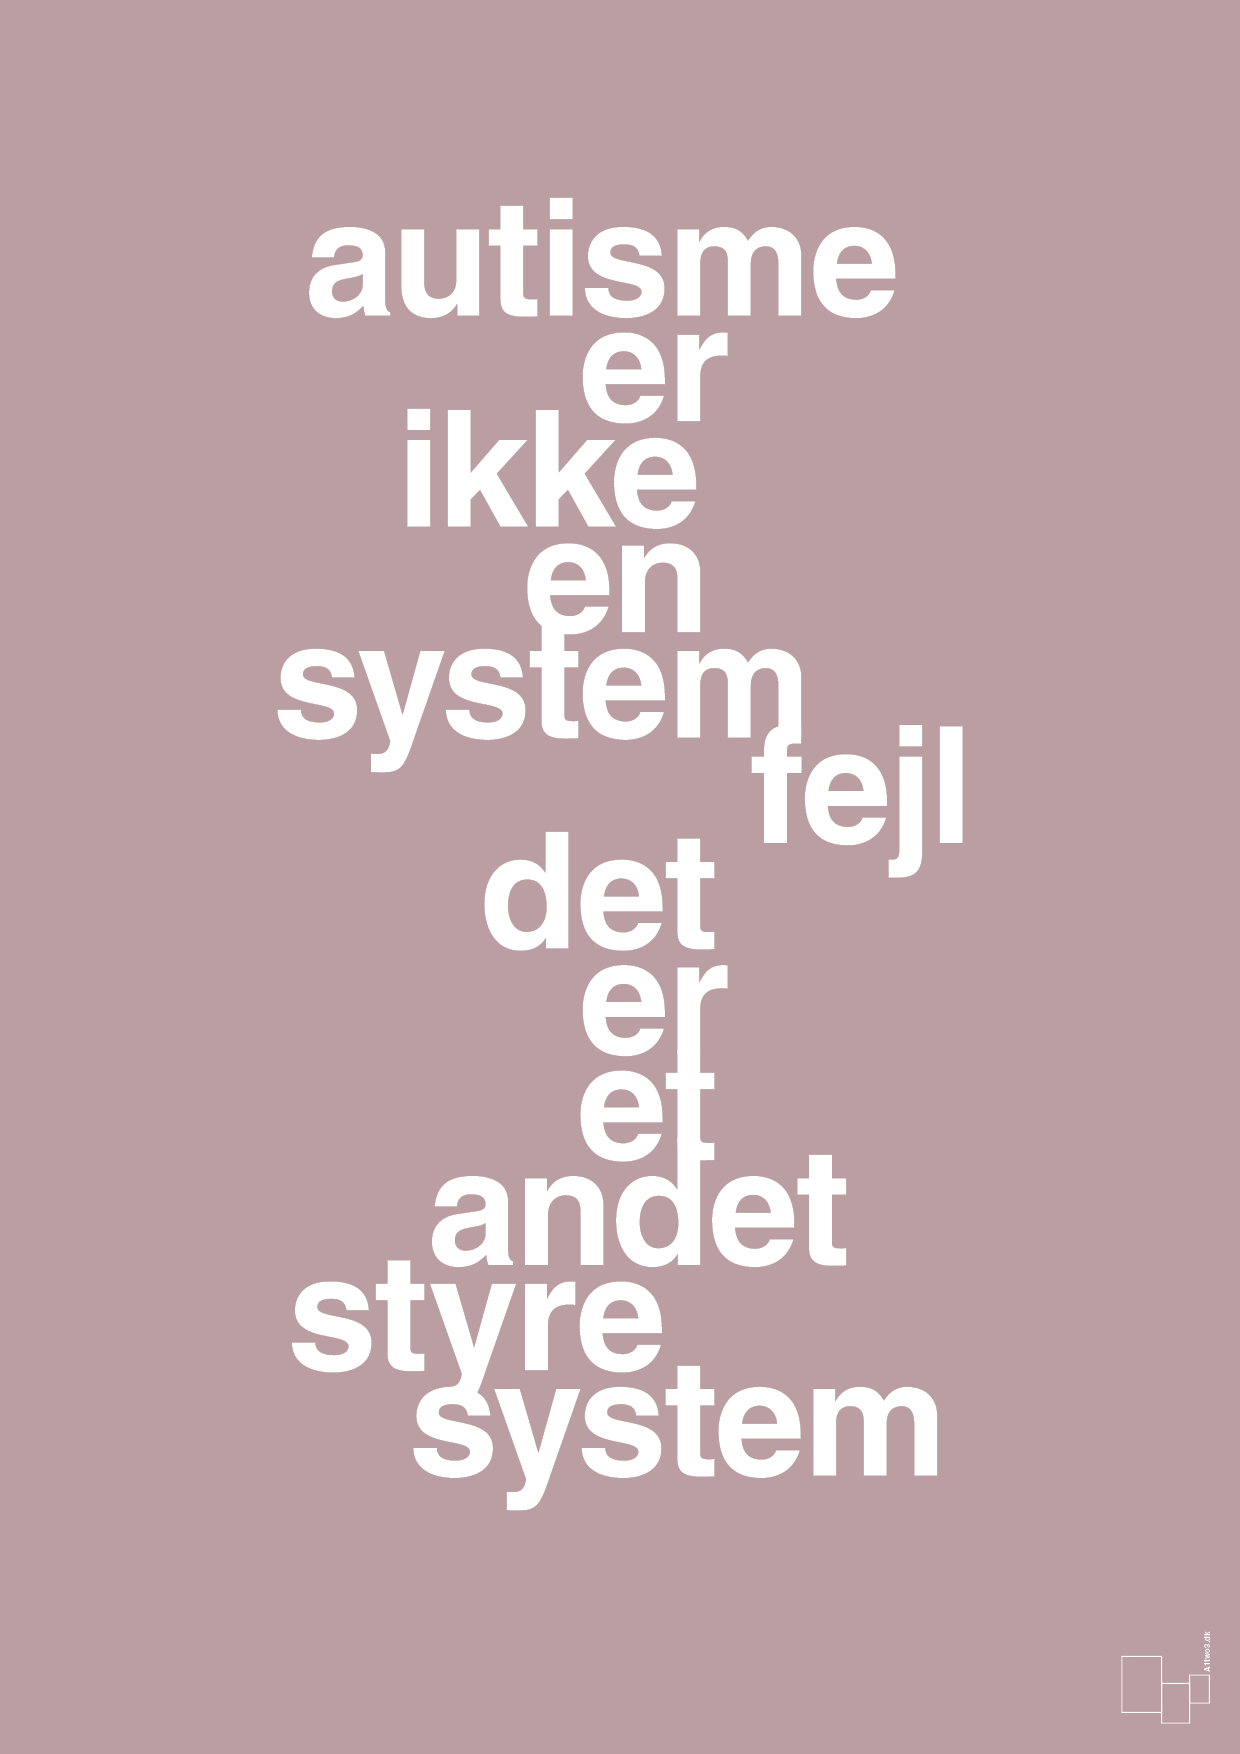 autisme er ikke en systemfejl - Plakat med Samfund i Light Rose